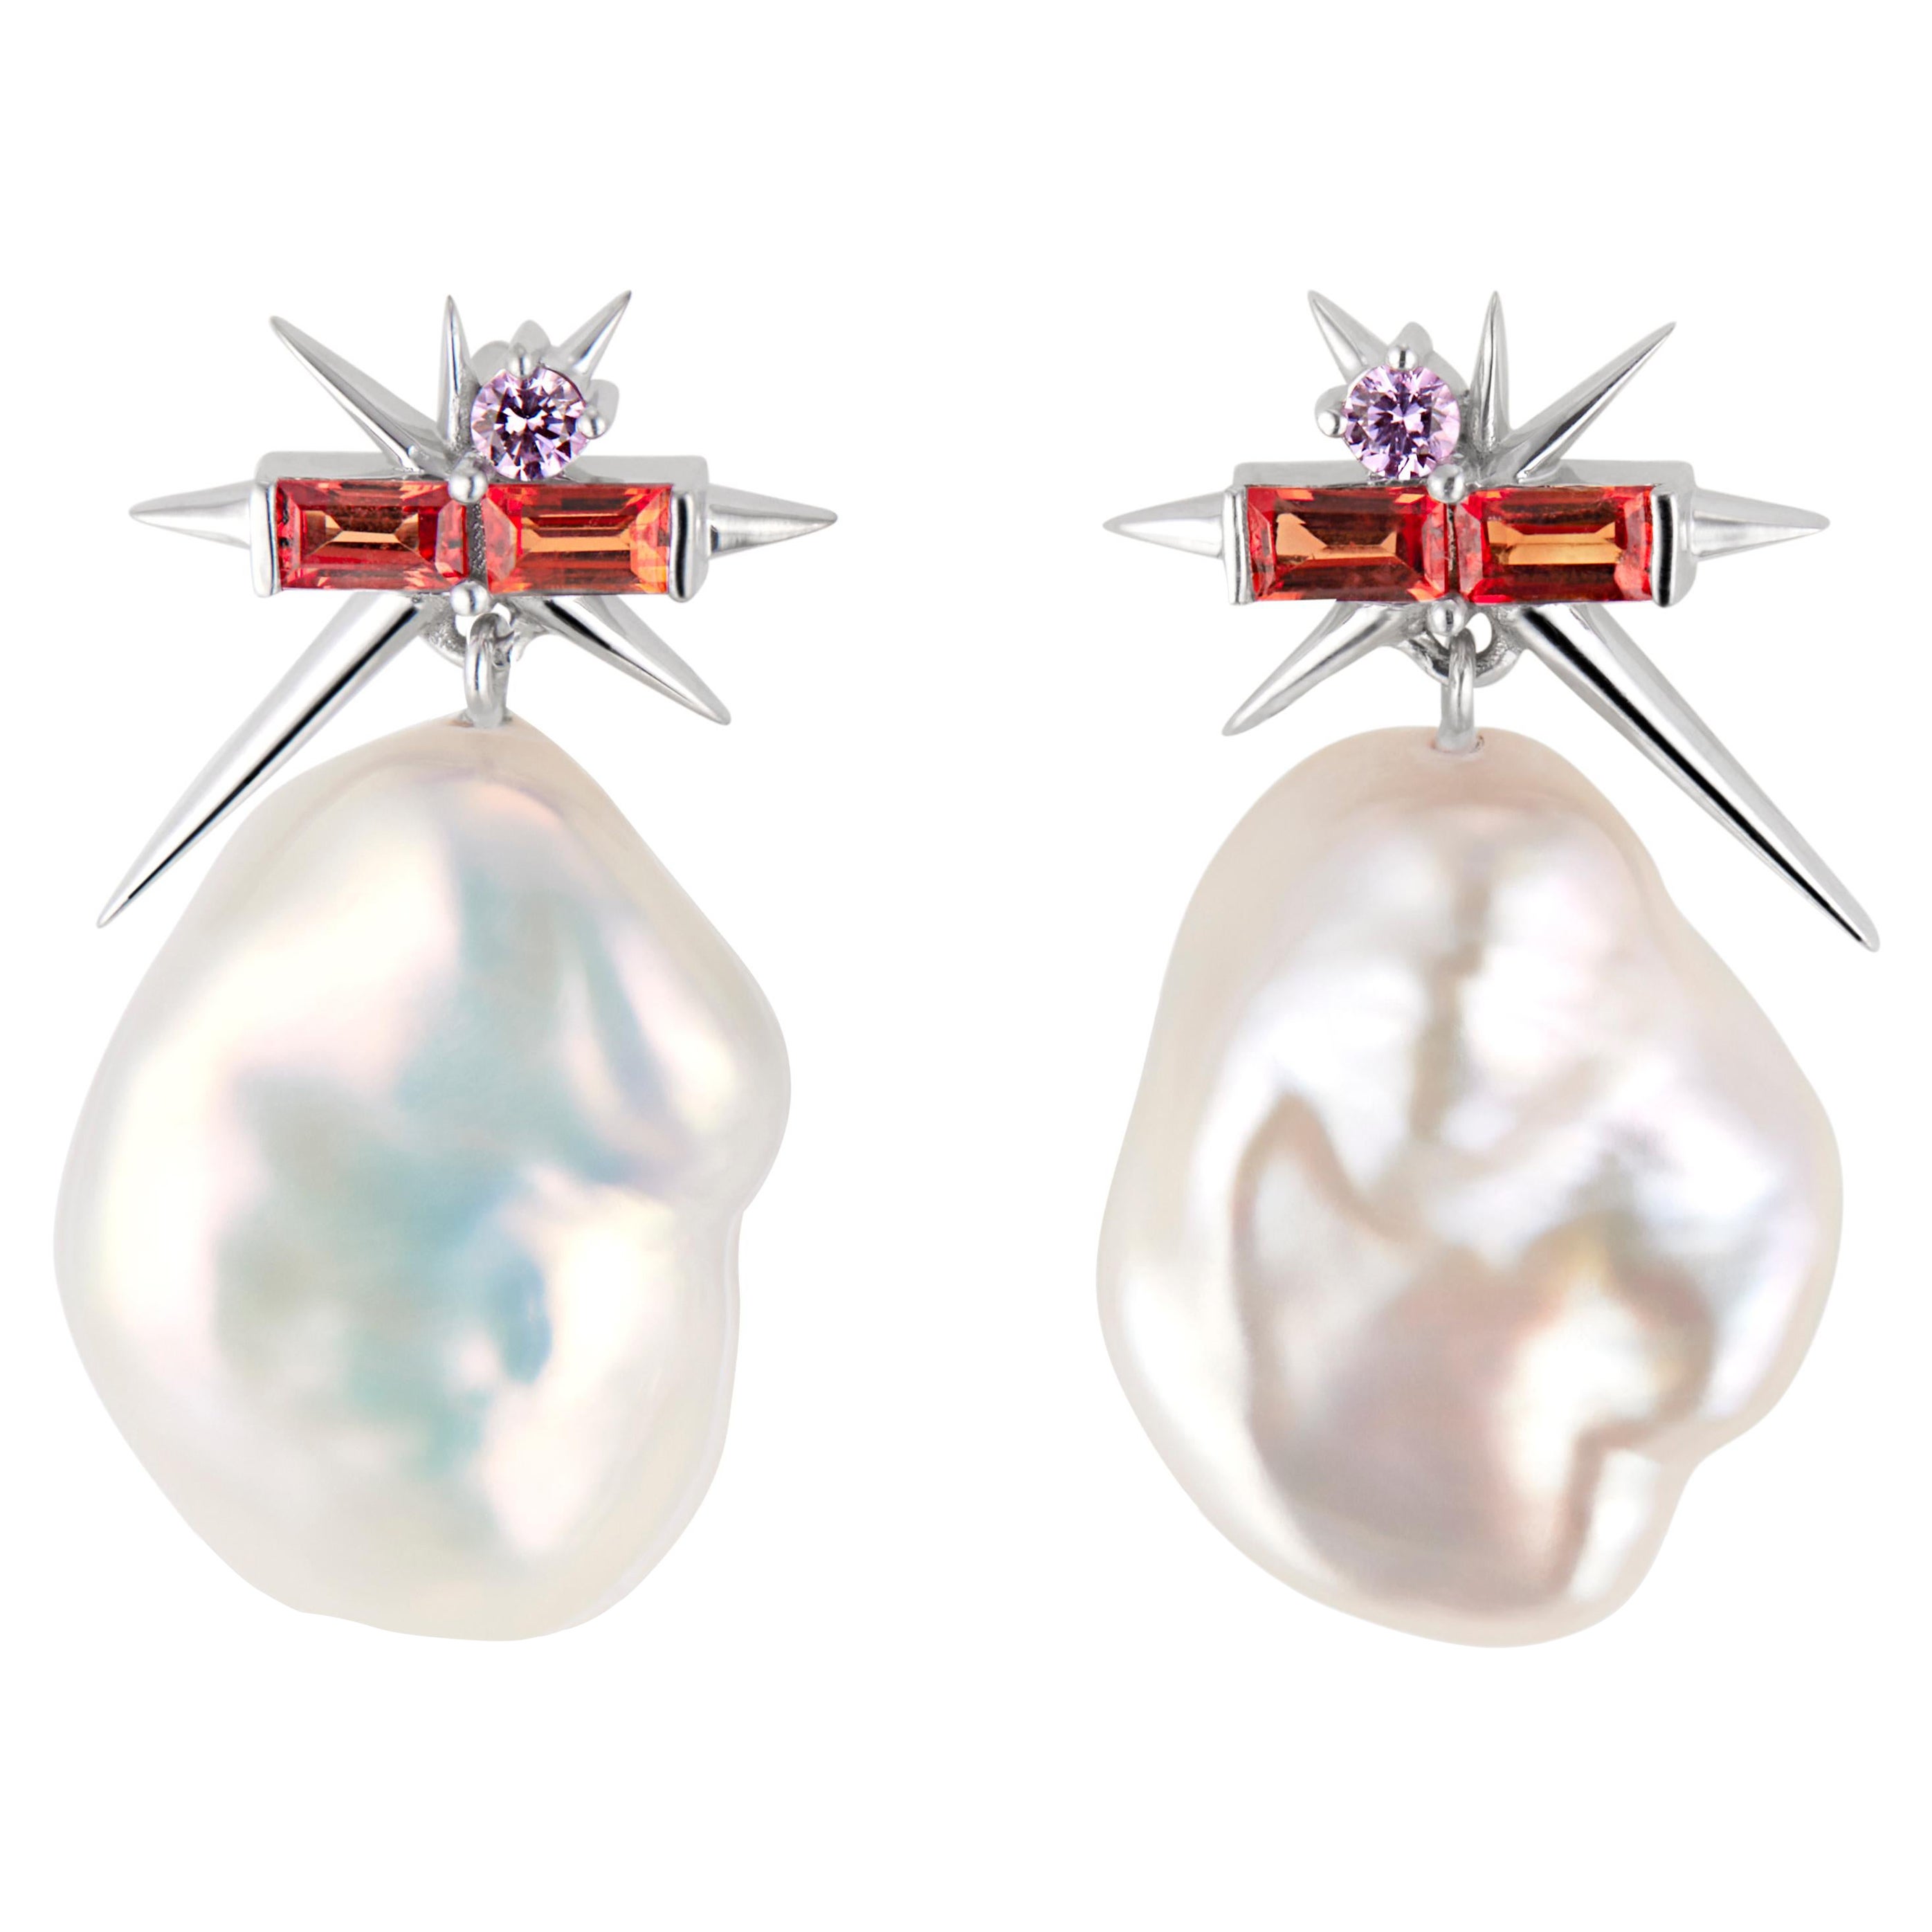 Boucles d'oreilles pendantes en or blanc 14ct, saphir et perles baroques, boucles d'oreilles à pointes